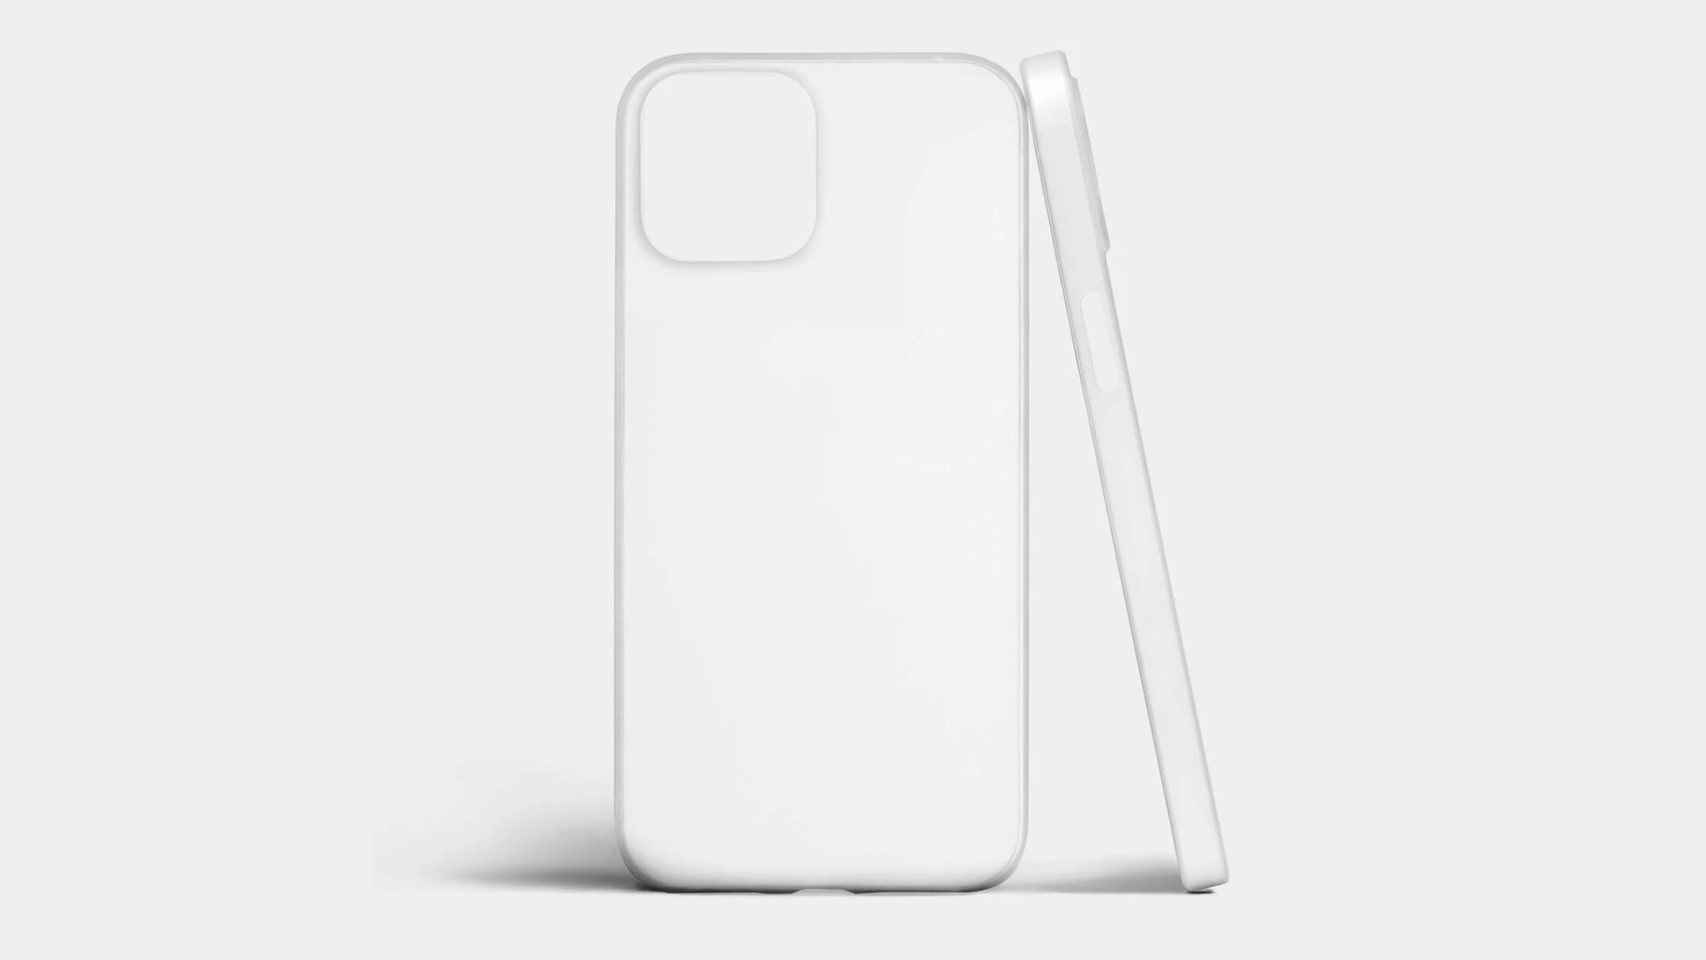 Un supuesto protector de pantalla revela el diseño del iPhone 8